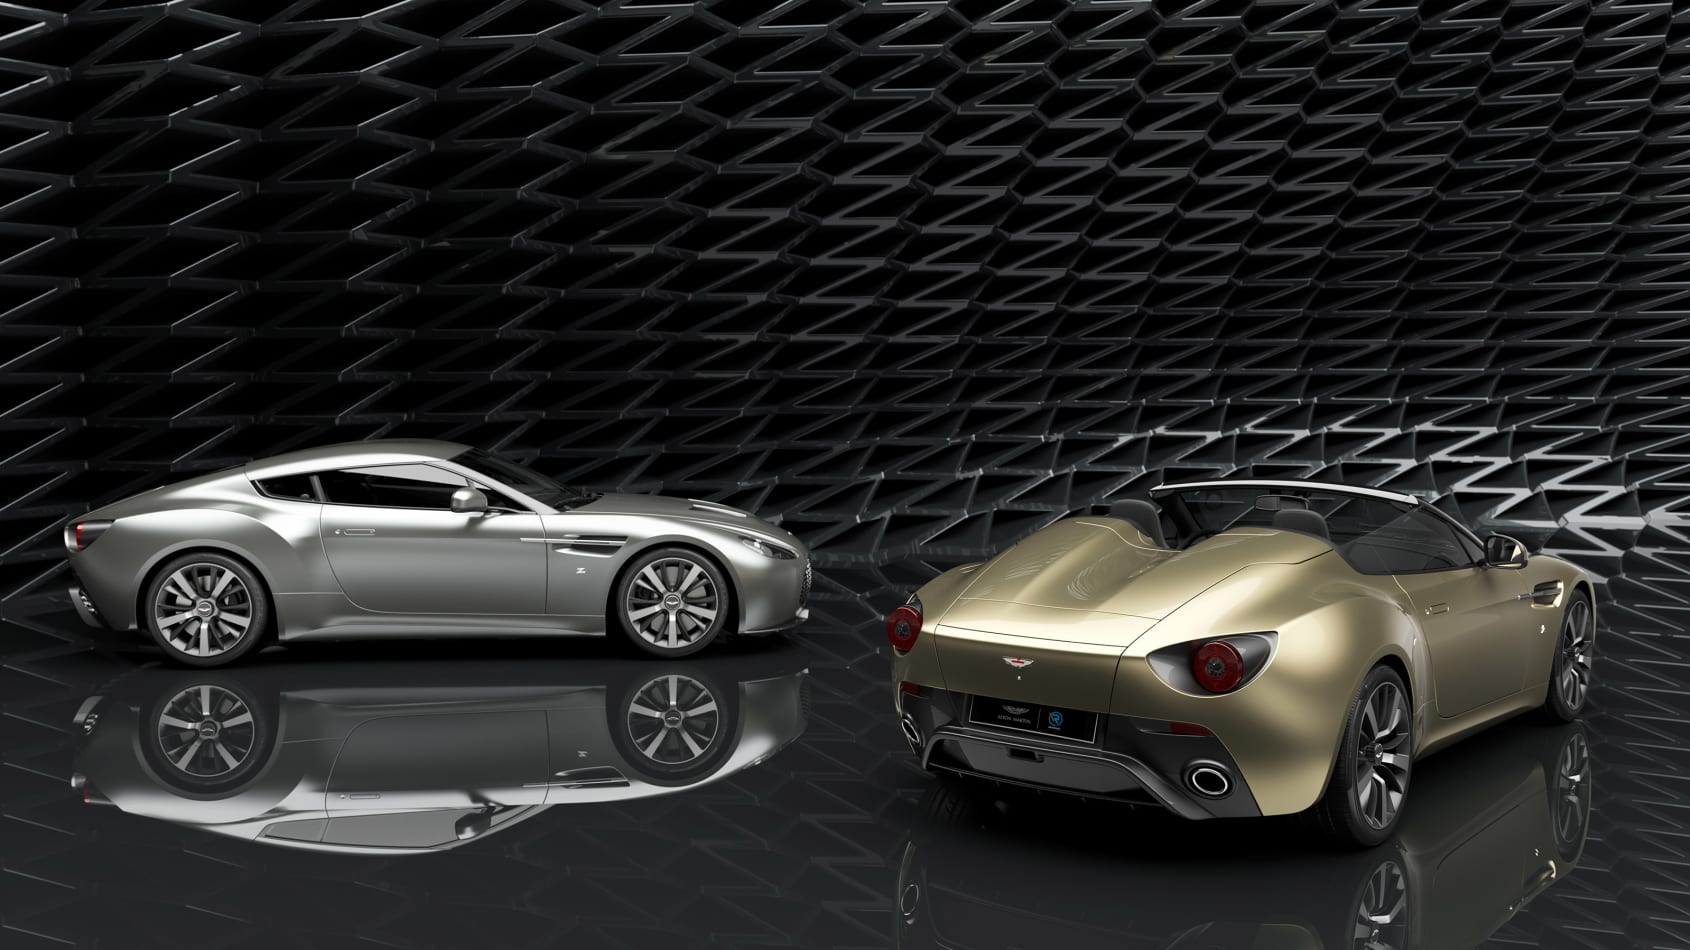 Aston Martin e Zagato mostram edições especiais comemorativas